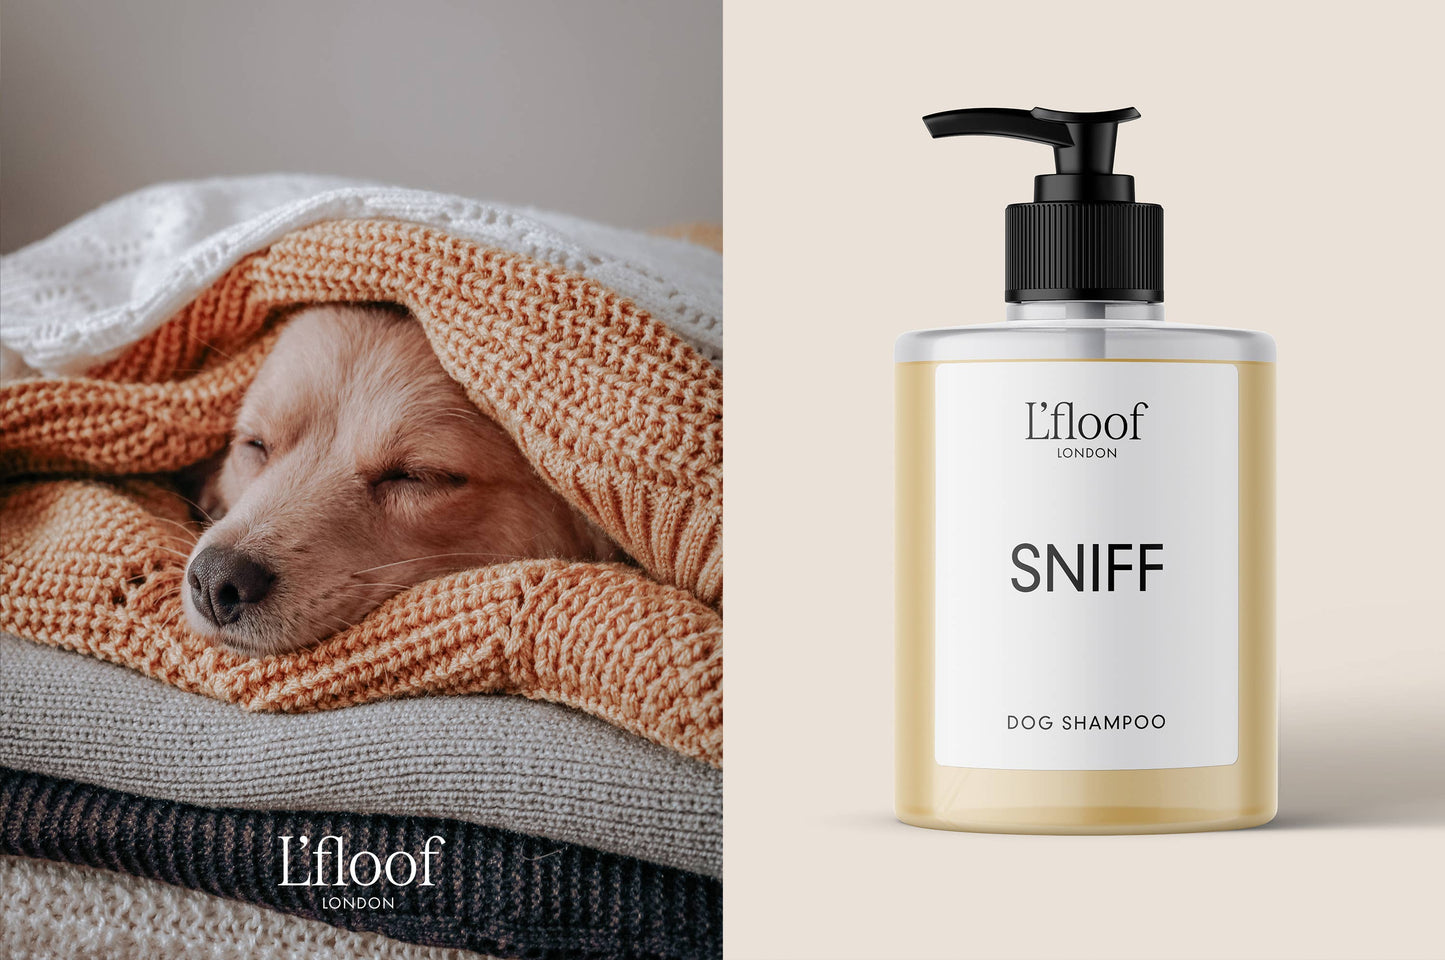 Natural Oat & Aloe Dog Shampoo - 500ml - L'floof SNIFF